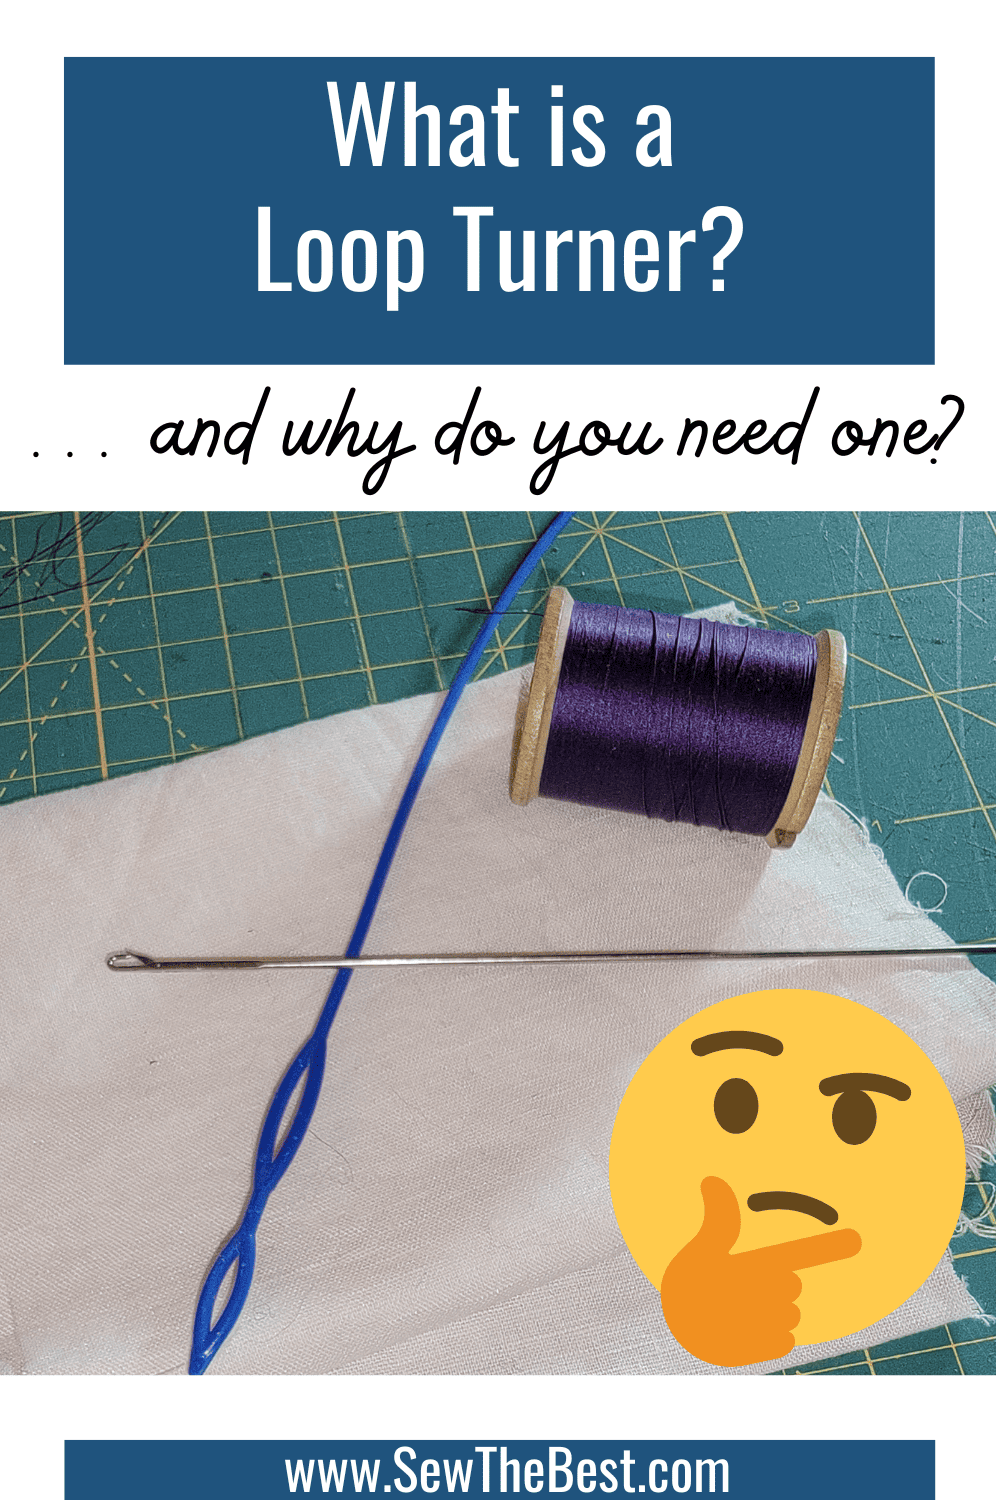 What is a Loop Turner?